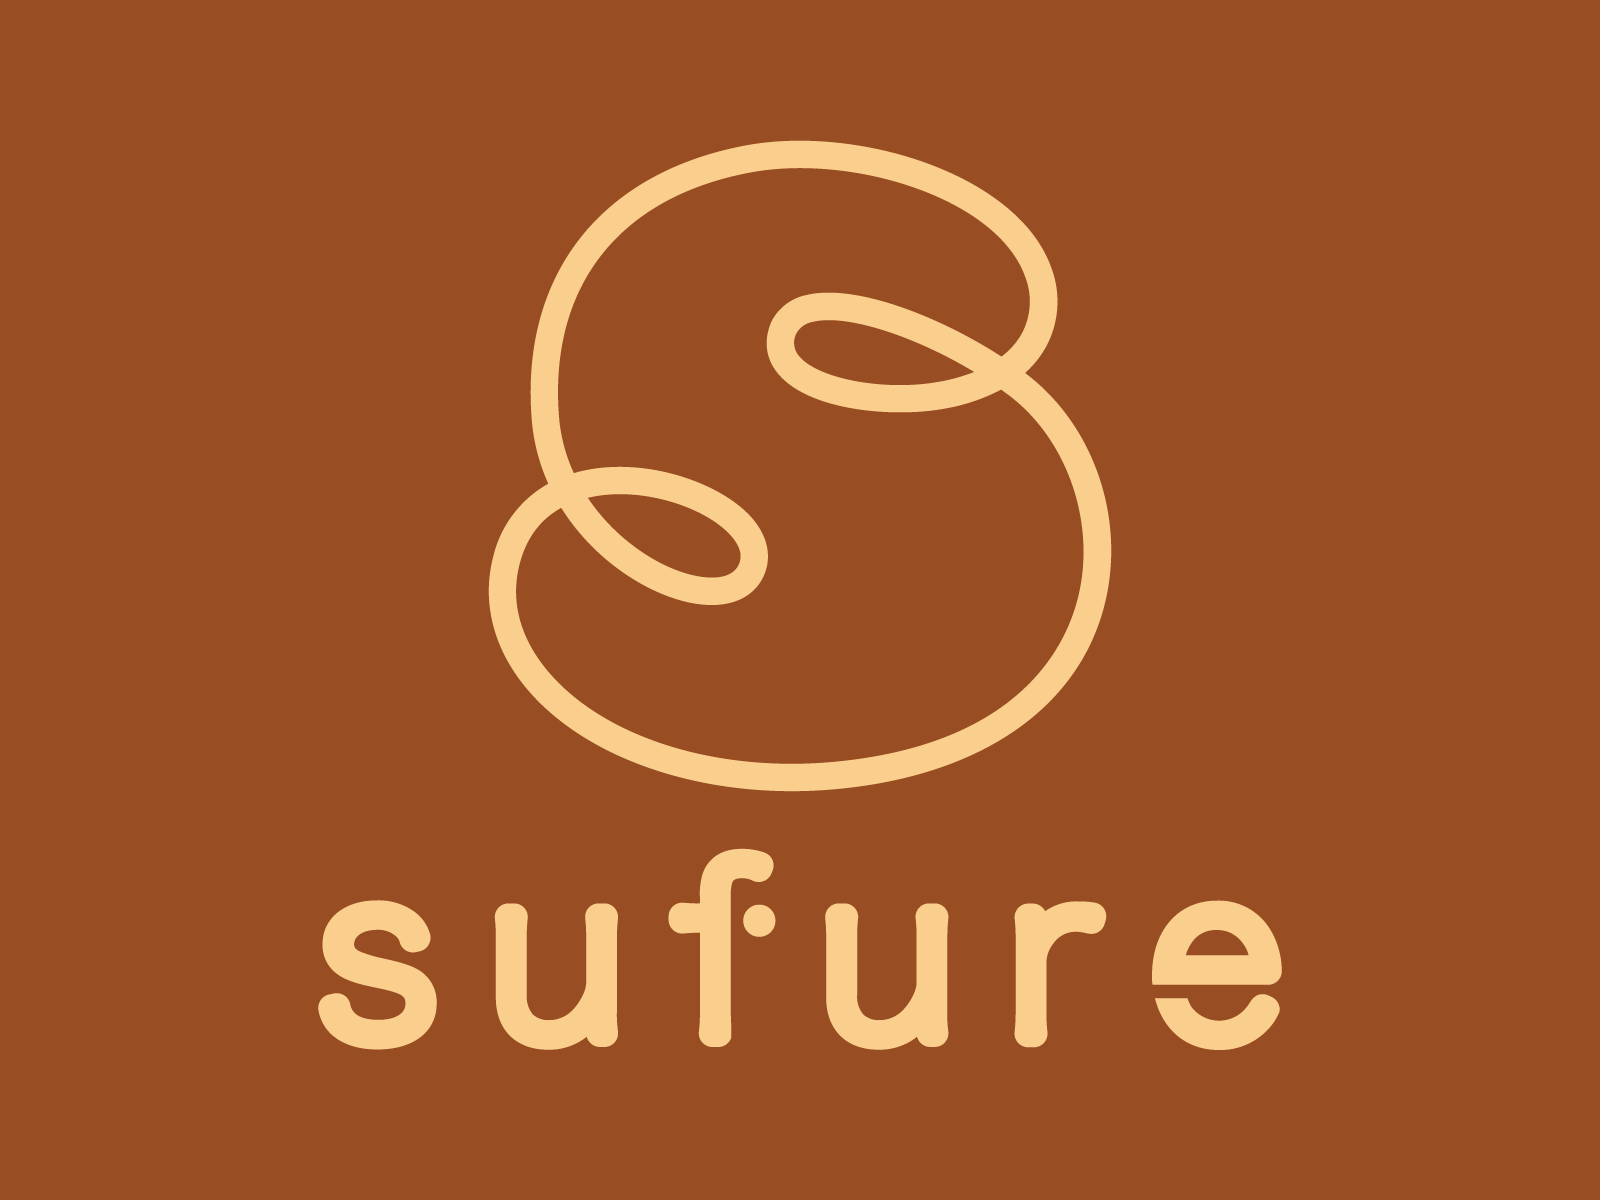 【sufure】
アクセル・モード初のクラウドサービス！スケジュールの管理やメールの確認が出来る働き方改革をサポートするグループウェア